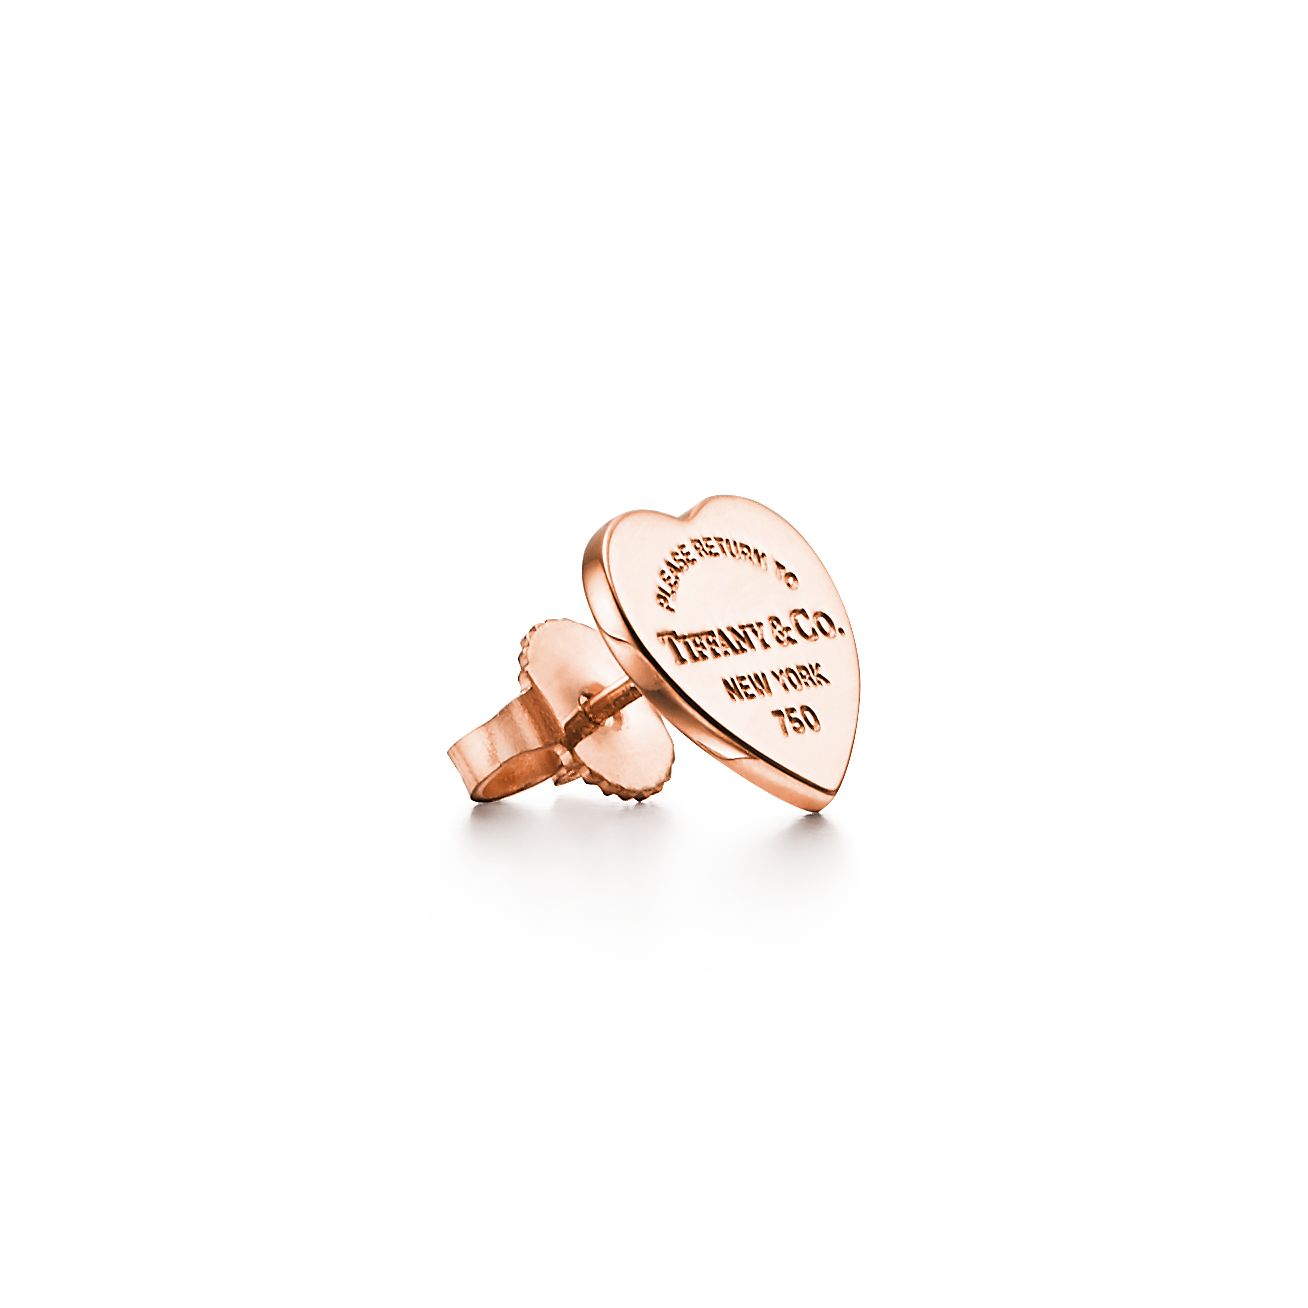 tiffany heart earrings uk